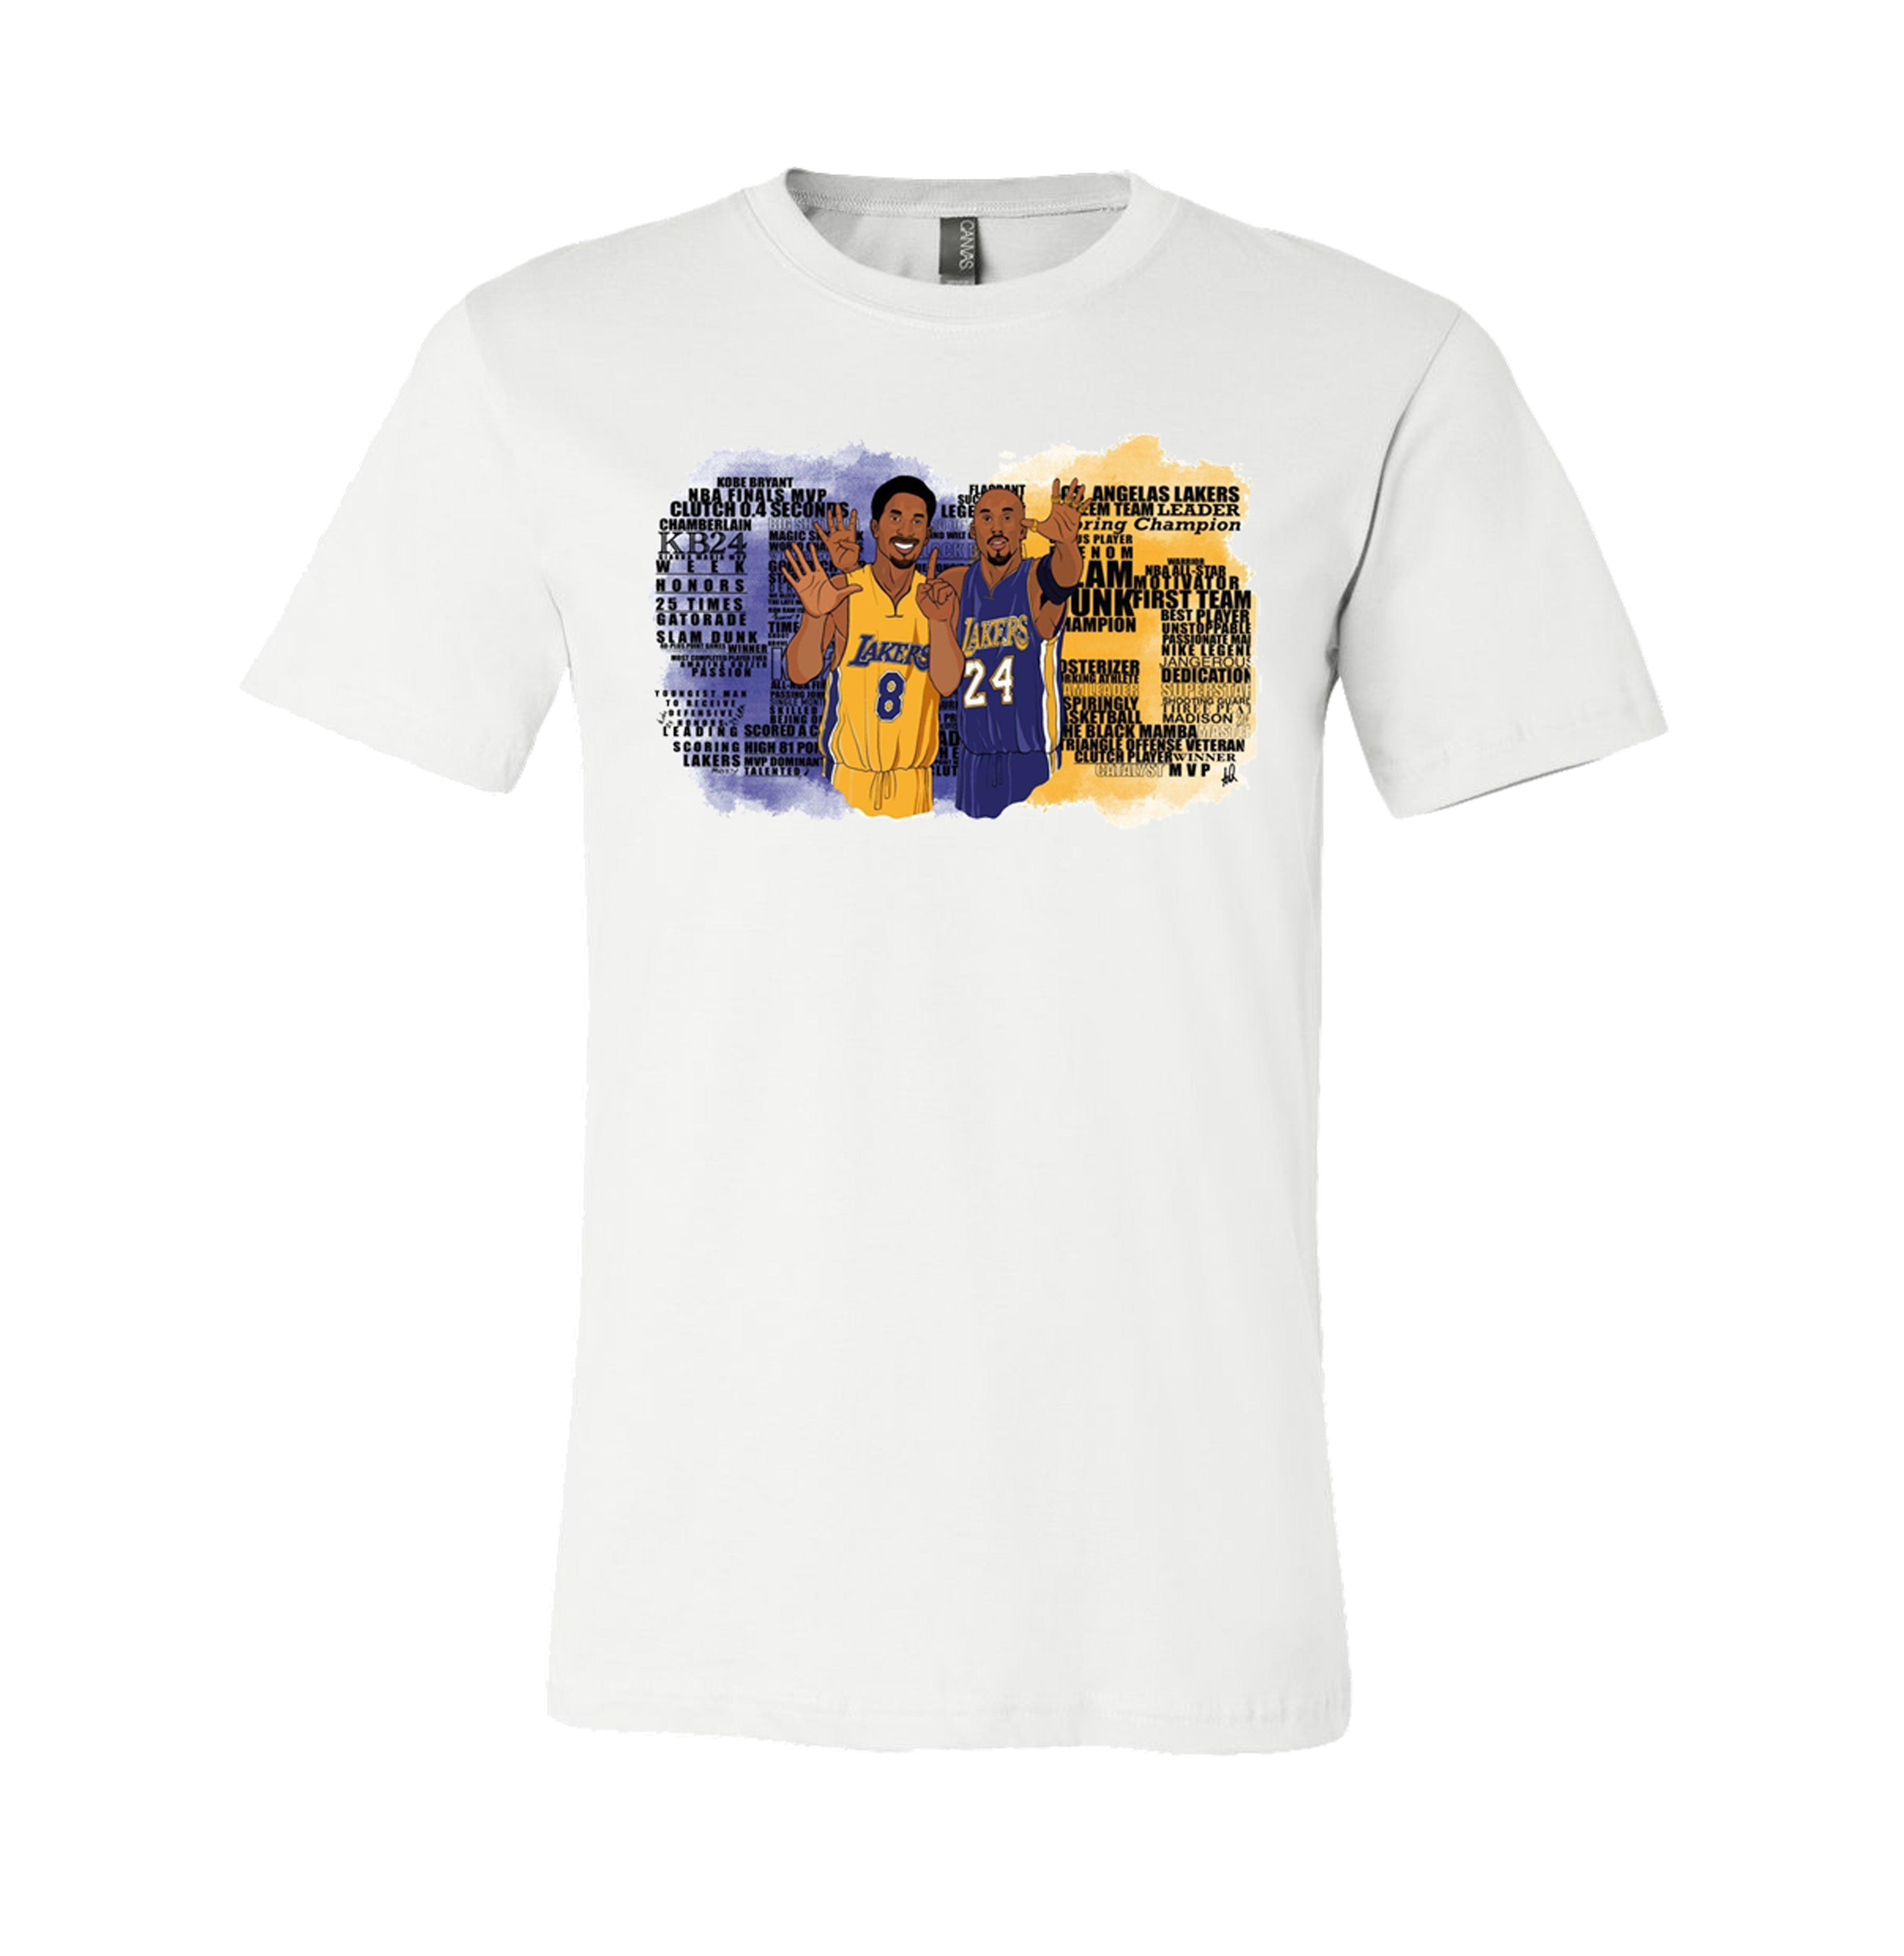 Shirts, Kobe Bryant And Shaq Tshirt